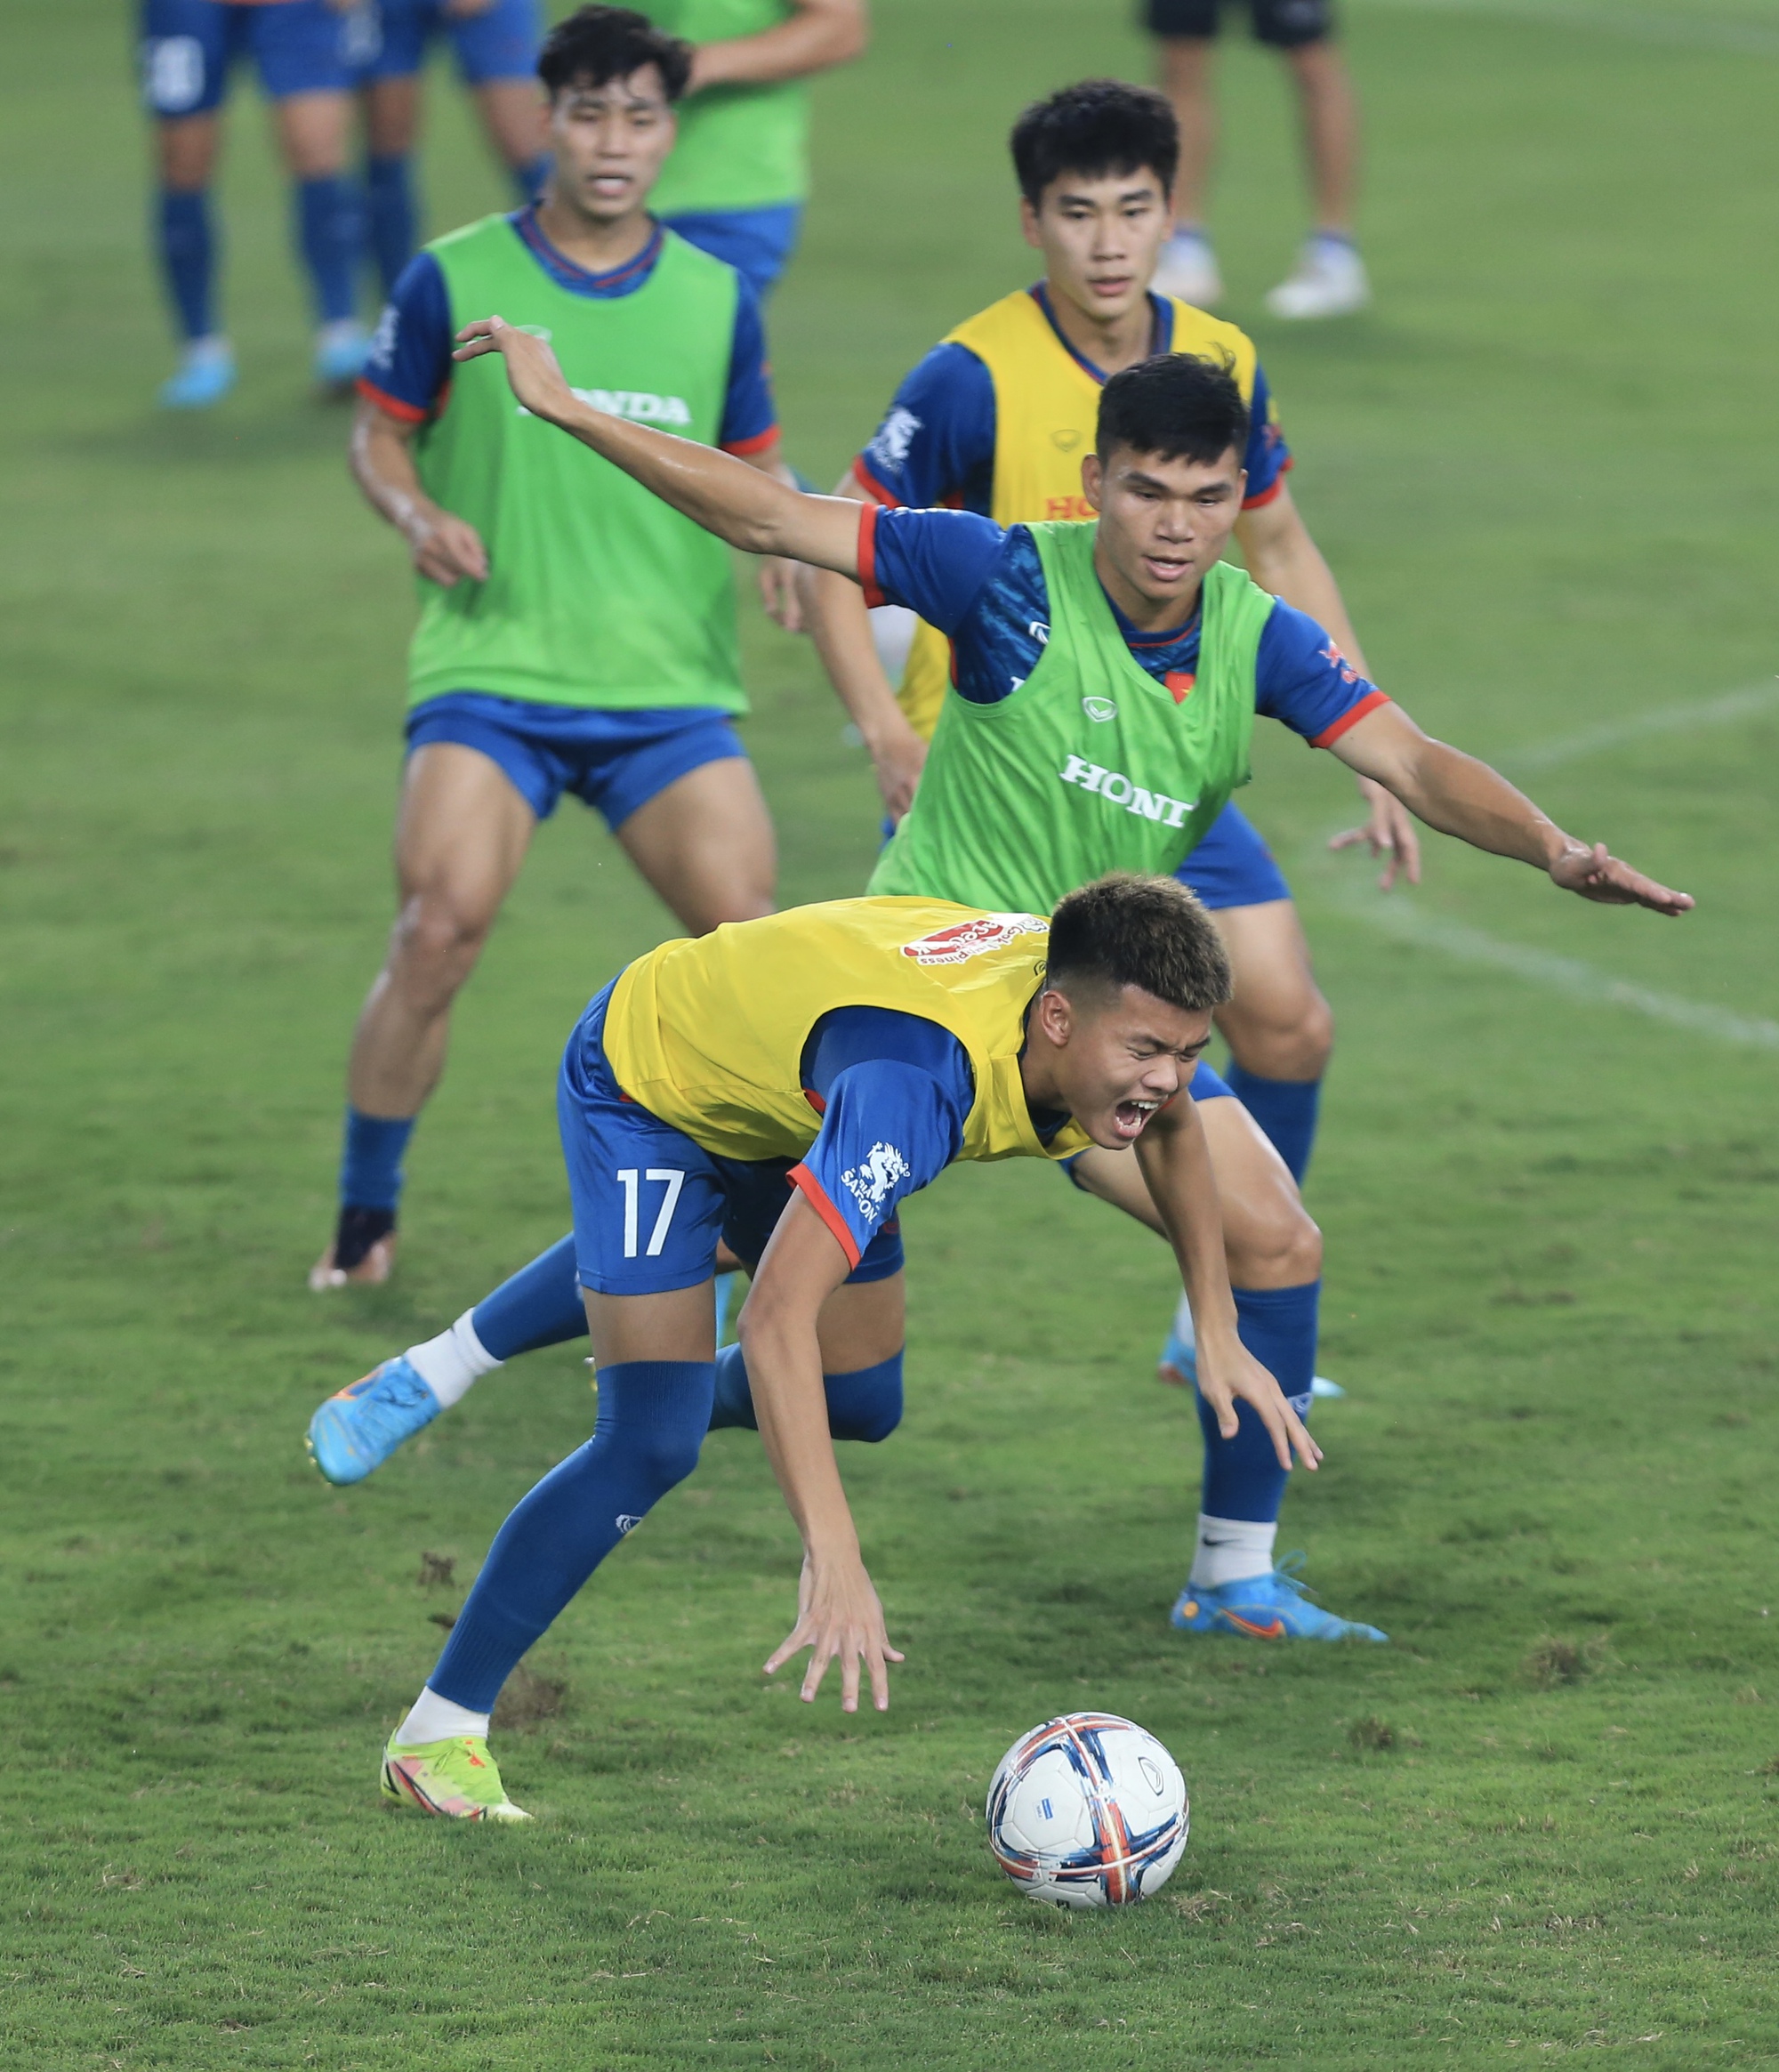 Đội tuyển Việt Nam đá đối kháng với U.23, Quang Hải đọ sức cùng đàn em - Ảnh 18.